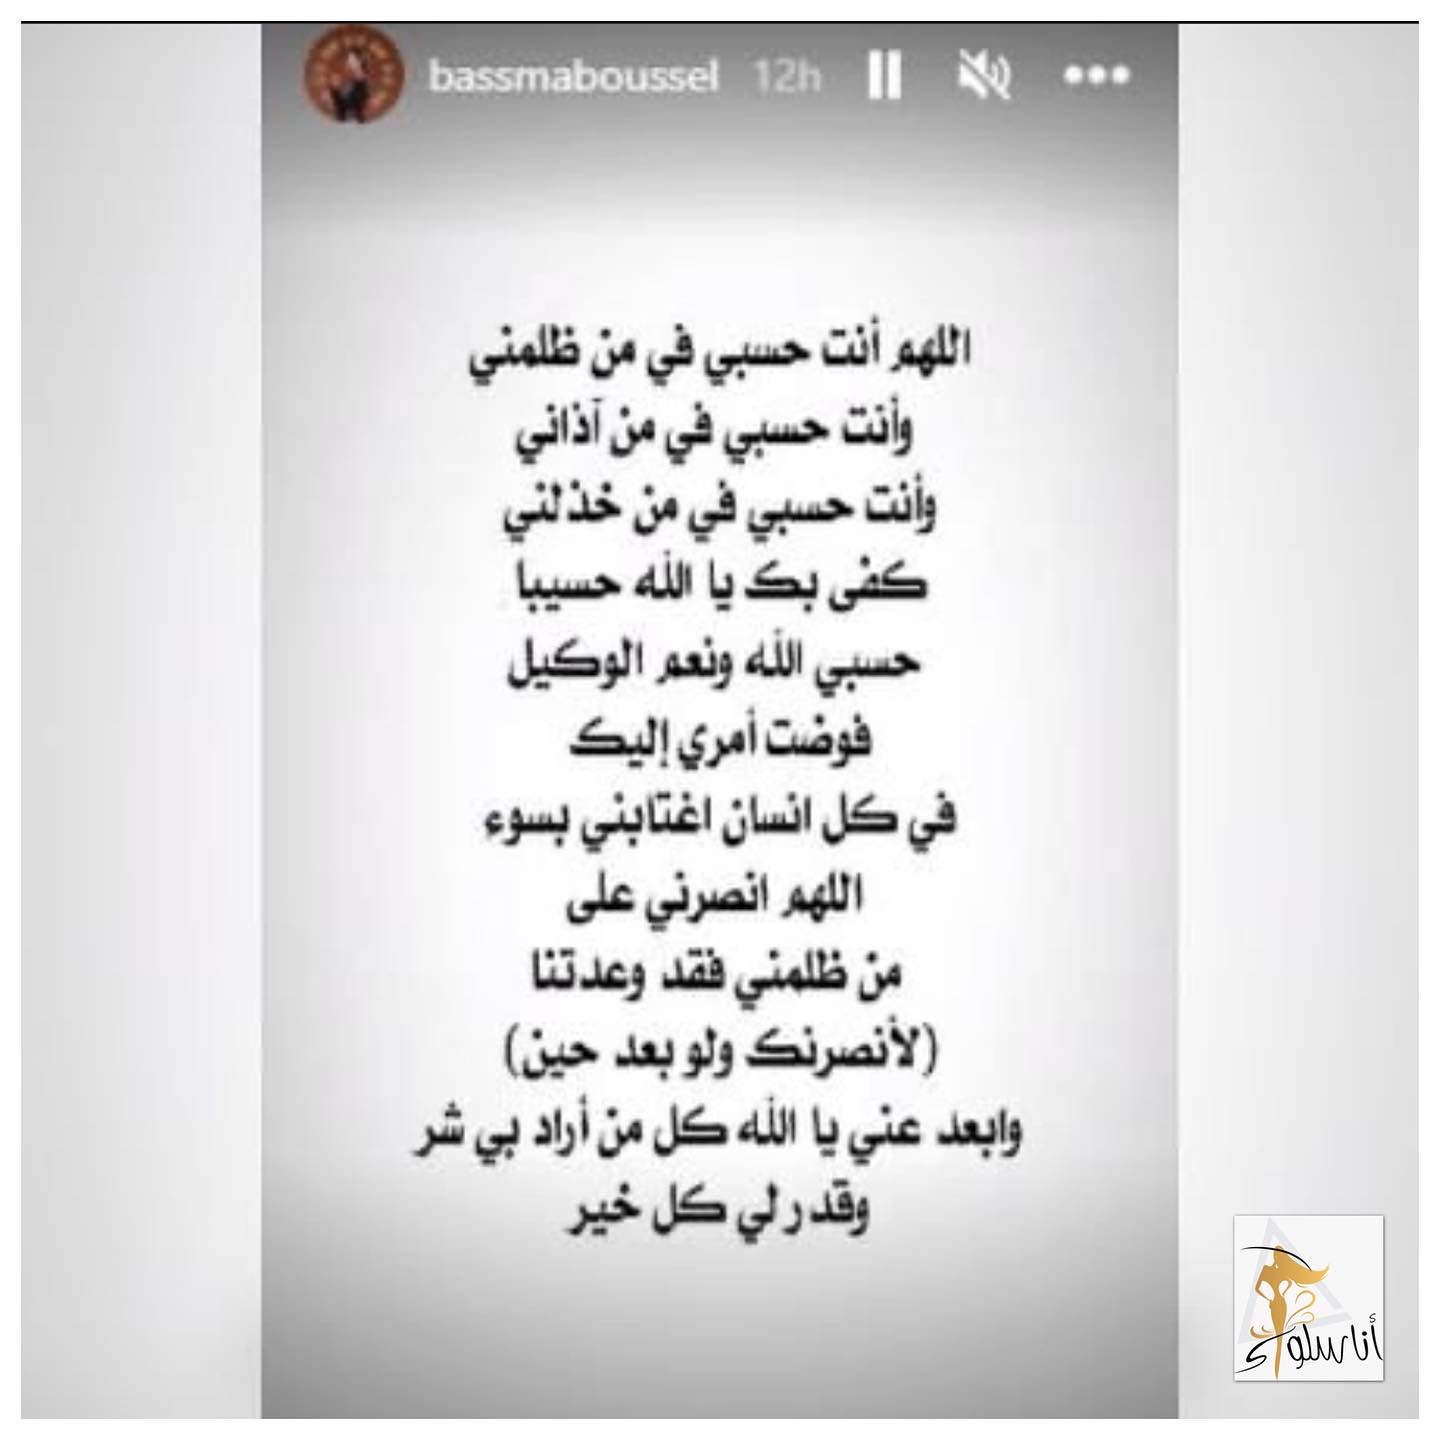 Basma Bousil द्वारे पोस्ट केलेले